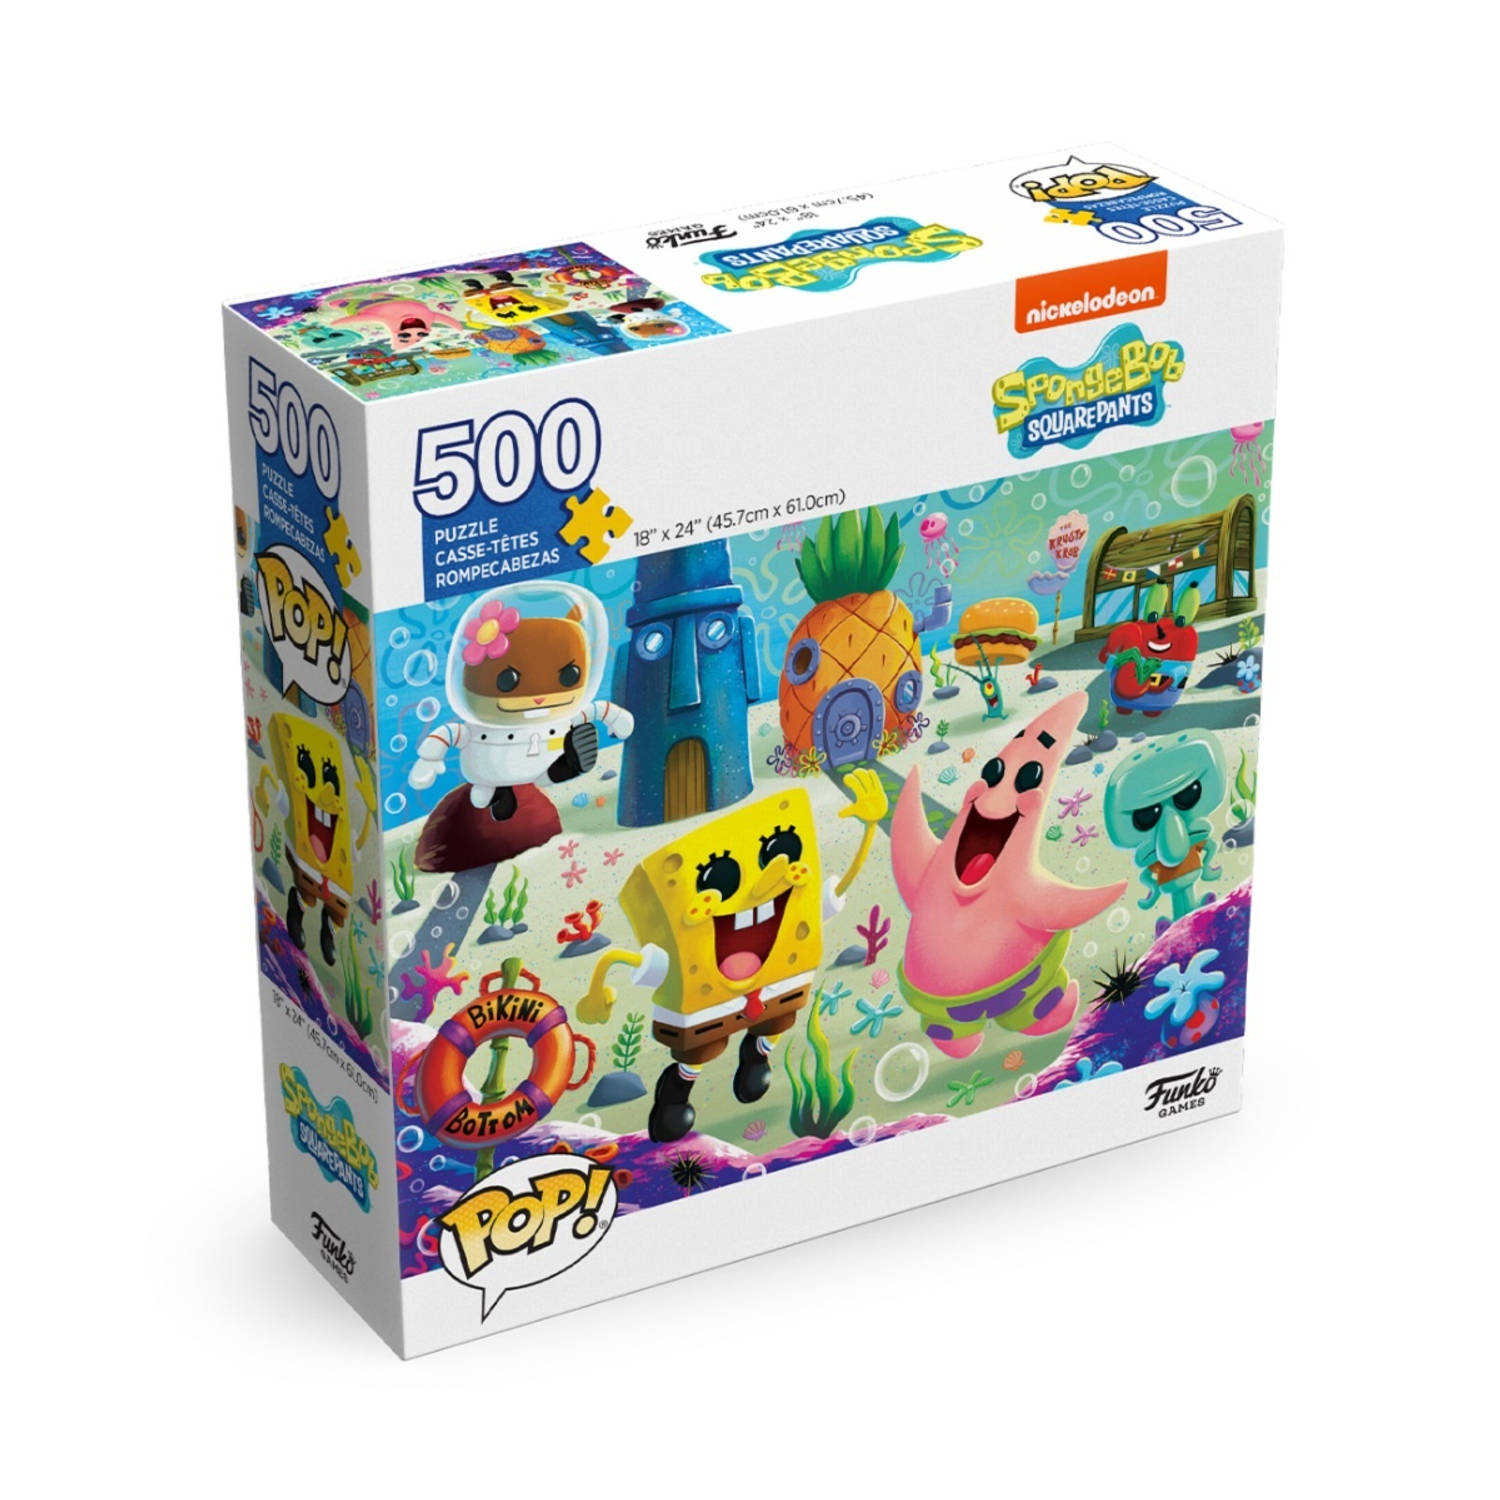 Funko SpongeBob SquarePants - POP! Jigsaw Puzzle Poster (500 pieces) Puzzel - Multicolours